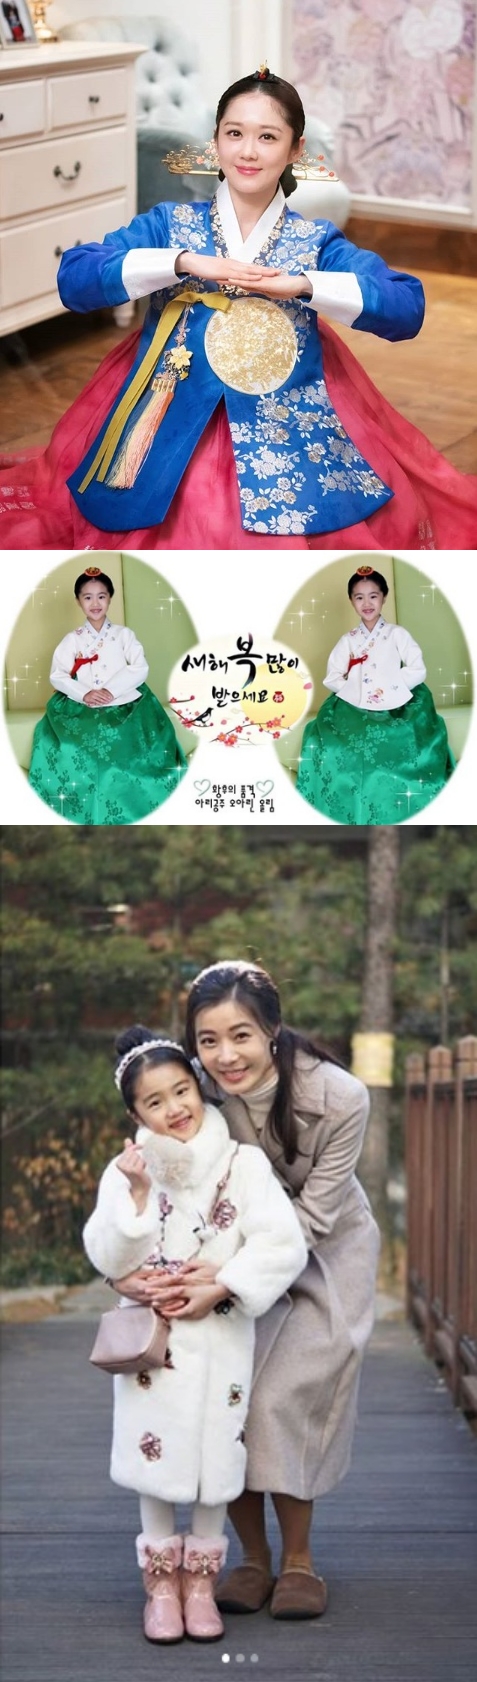 6일 SBS tv편성표에 따르면 수목드라마 '황후의 품격'이 설날 연휴를 맞아 결방한다. 사진=장나라(맨위), 오아린 인스타그램 캡처